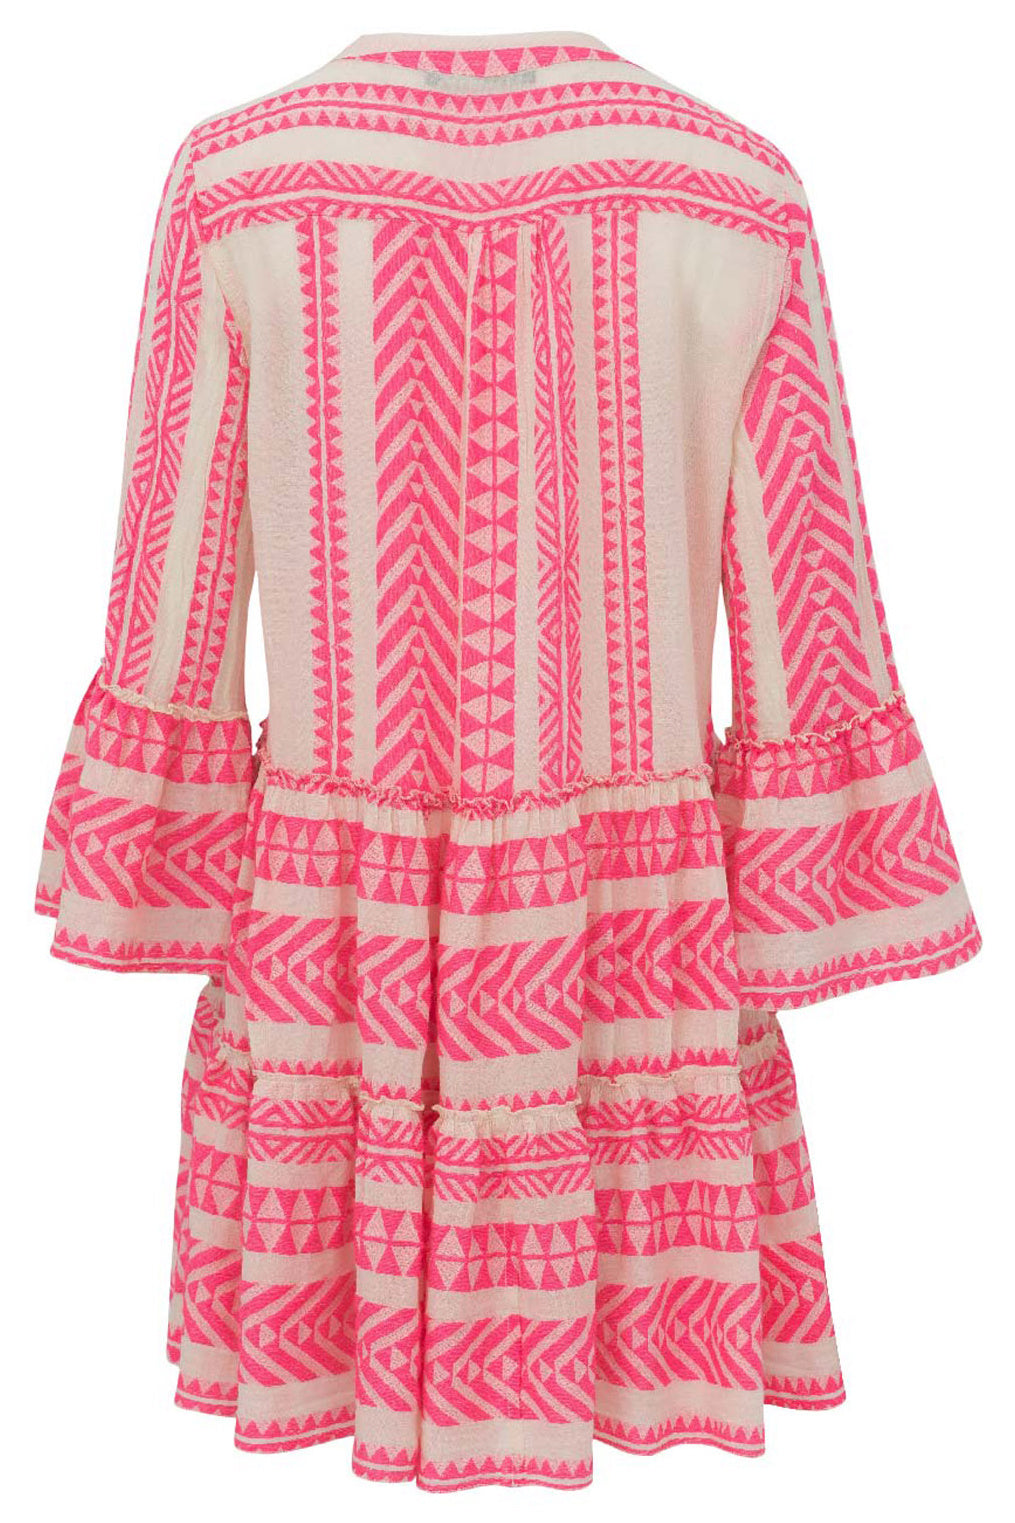 Short Ella Dress in Neon Pink/Off White